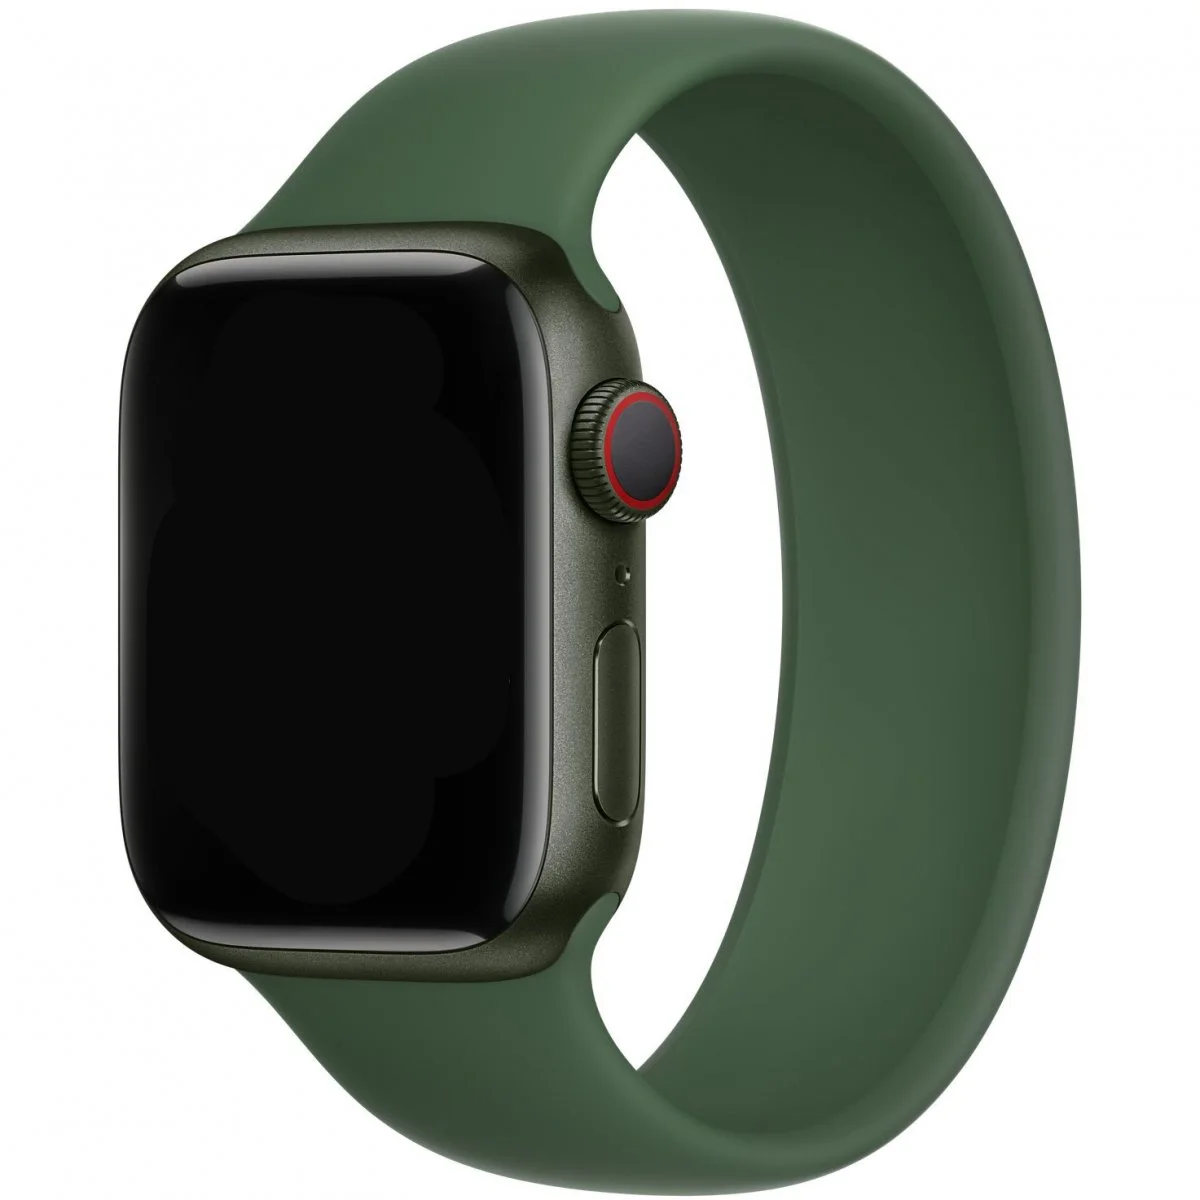 Řemínek iMore Solo Loop Apple Watch Series 1/2/3 42mm - Jetelově zelená (S)